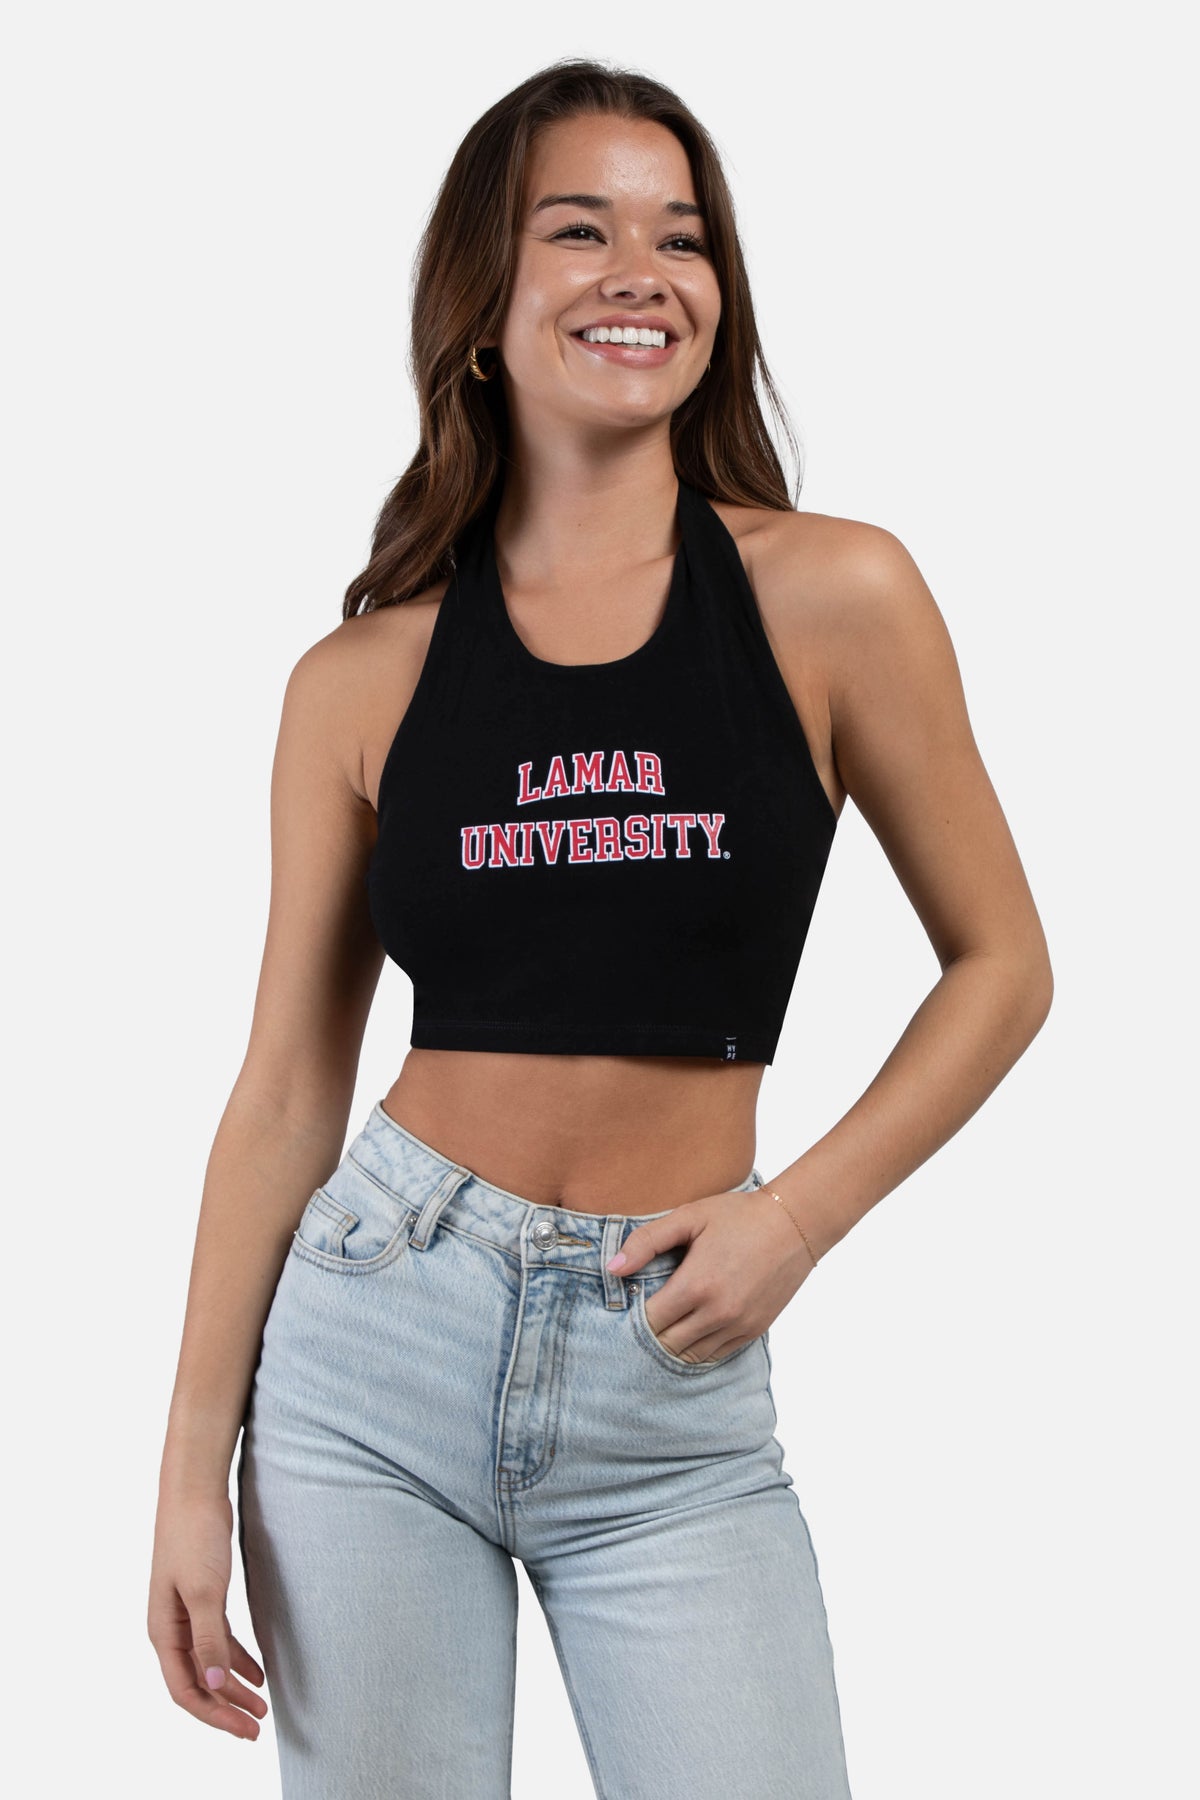 Lamar University Tailgate Top